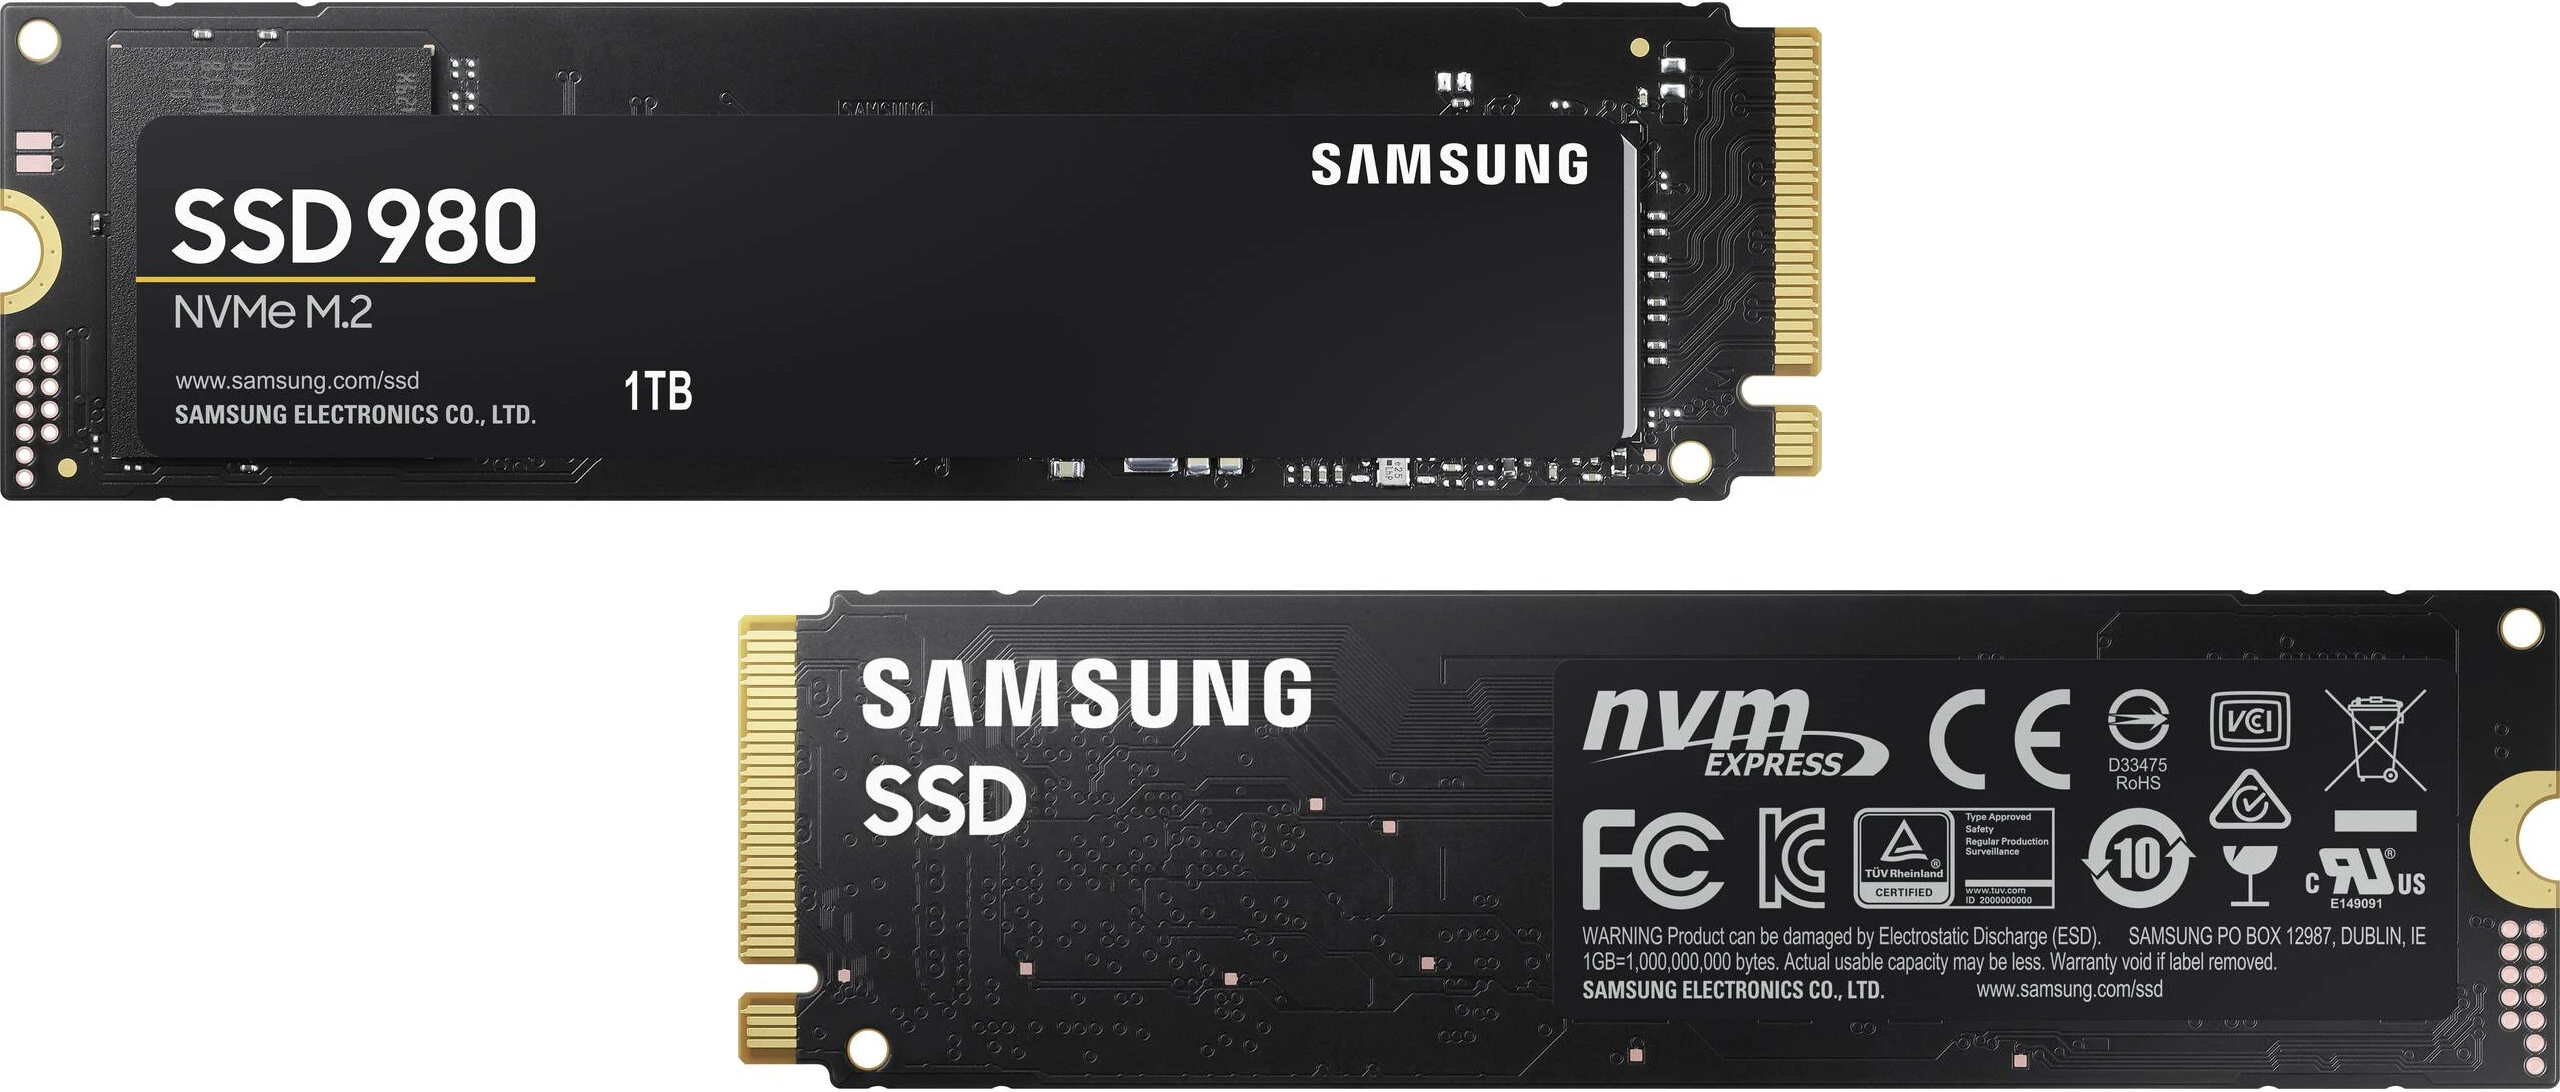 삼성 SSD 980에는 DRAM 및 PCIe 4.0이 없습니다.